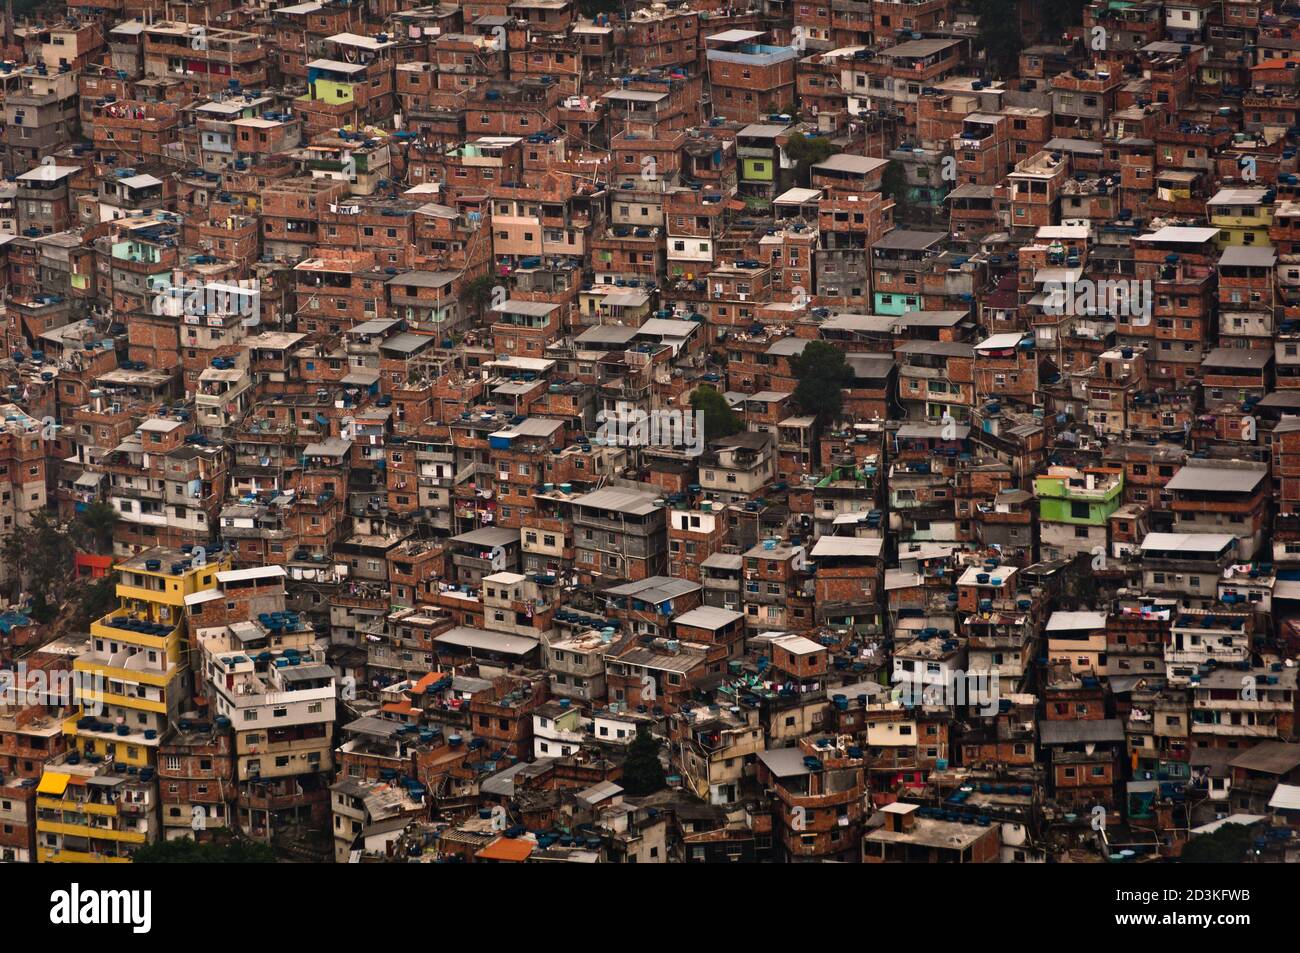 Favela da Rocinha, la più grande Slum (Shanty Town) in America Latina. Situato a Rio de Janeiro, Brasile, ha più di 70,000 abitanti. Foto Stock